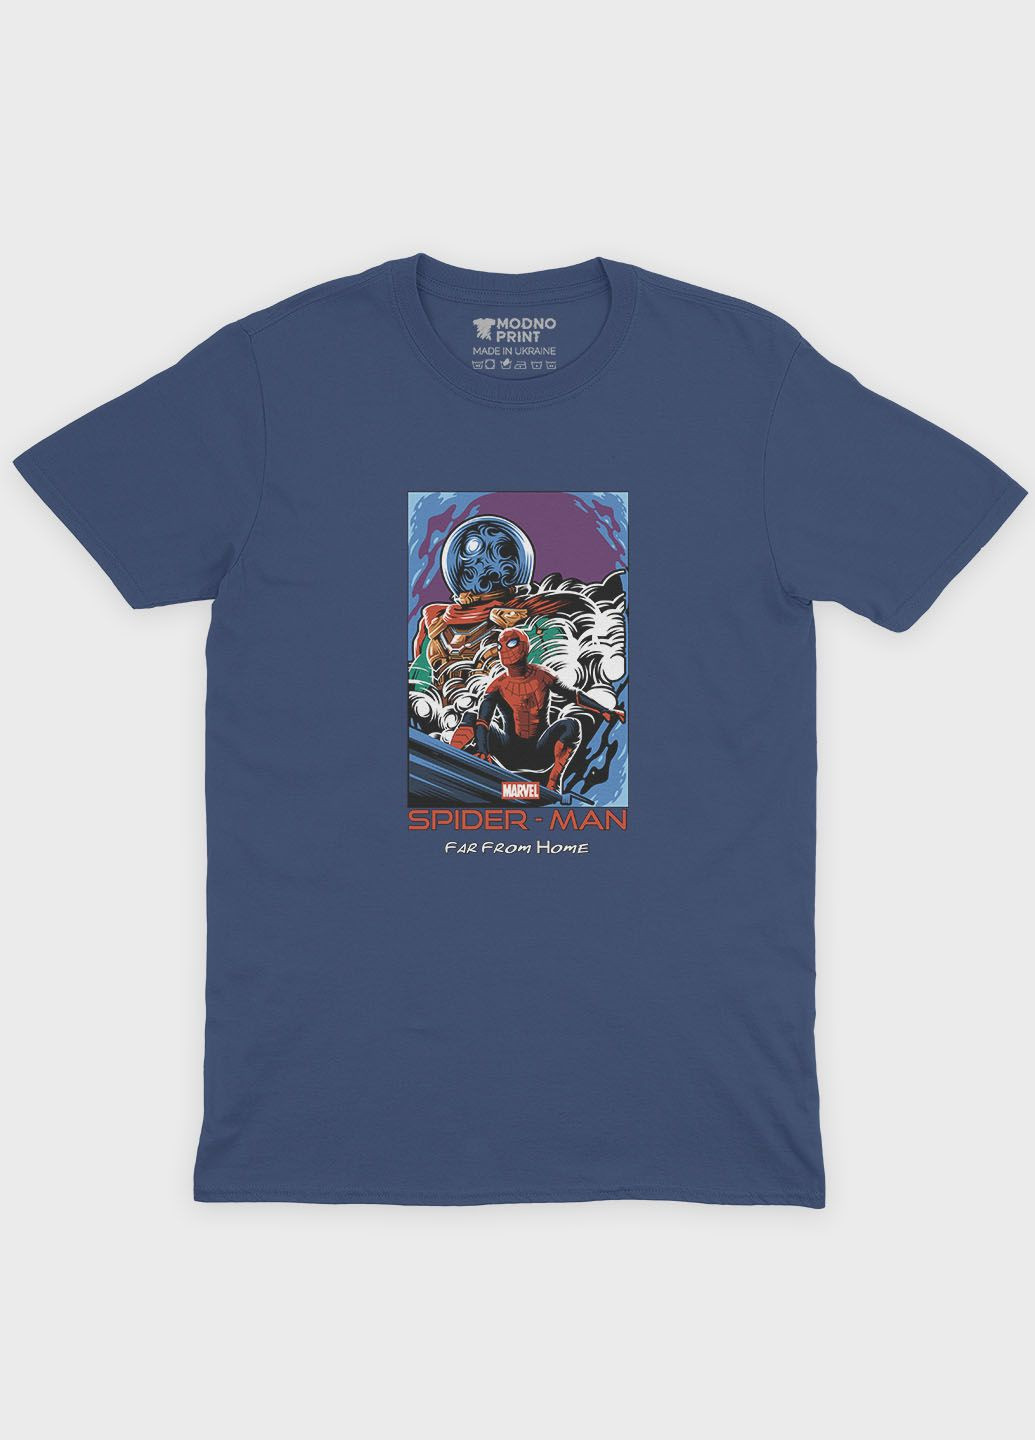 Темно-синя демісезонна футболка для хлопчика з принтом супергероя - людина-павук (ts001-1-nav-006-014-036-b) Modno